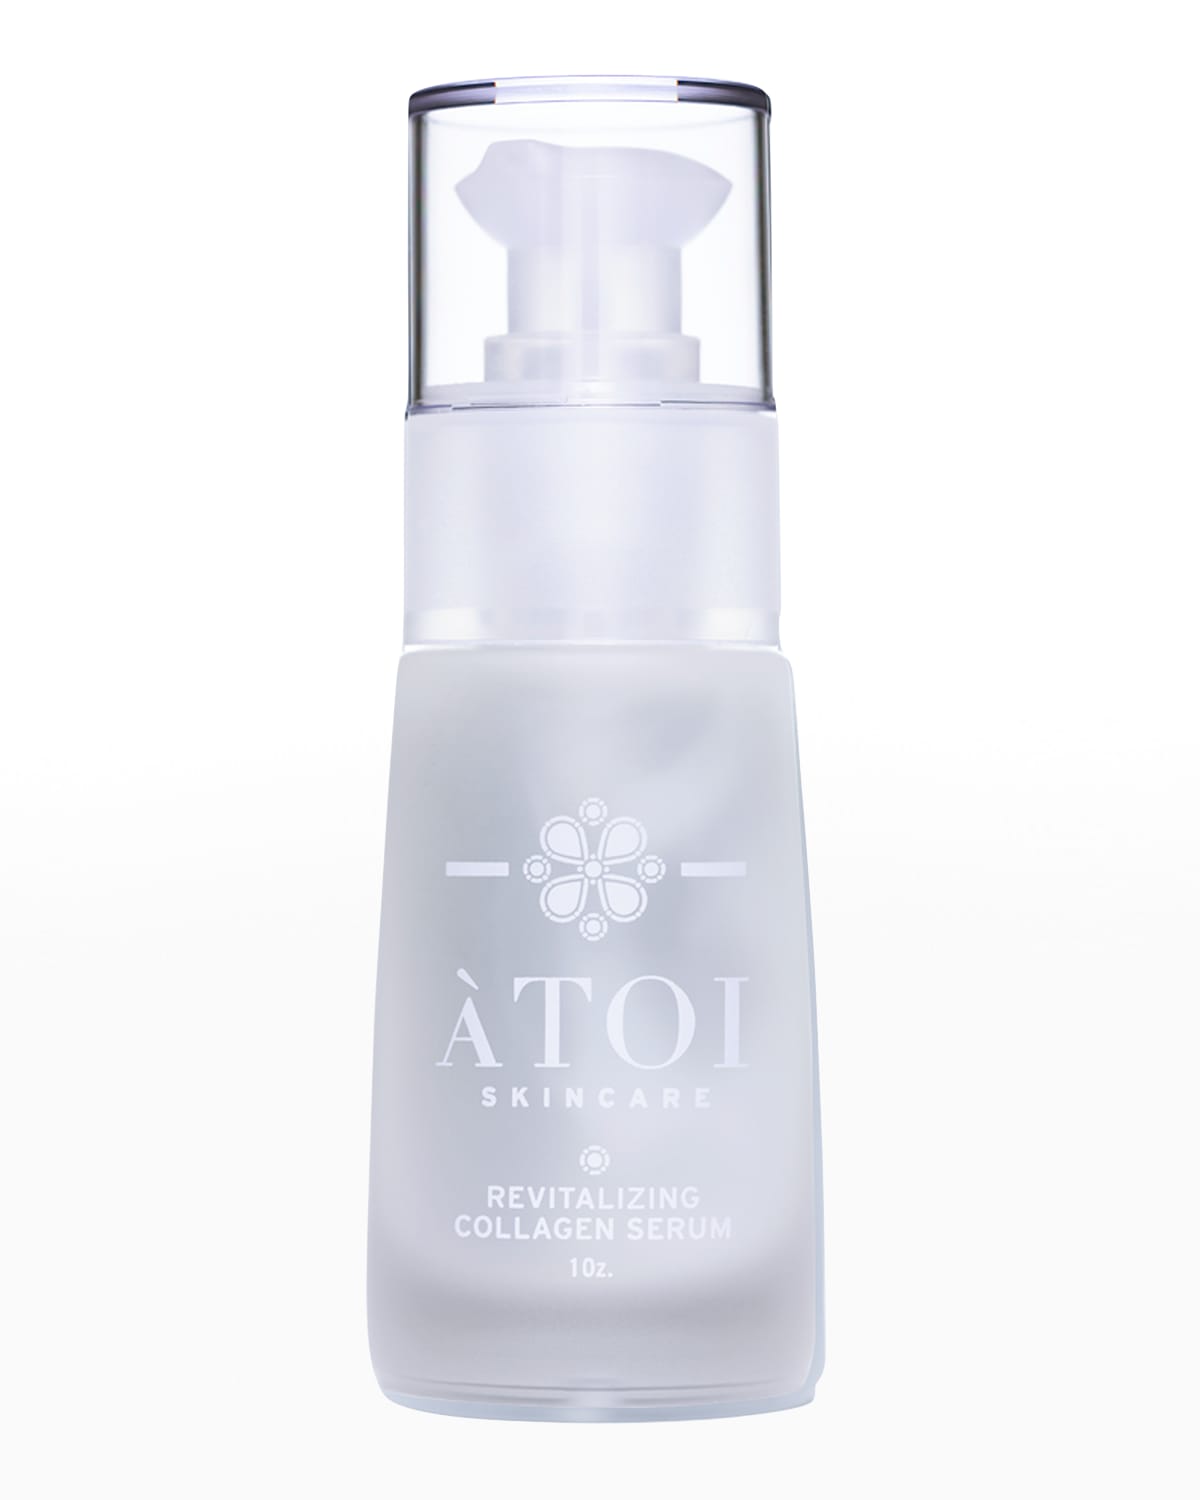 ATOI Skincare Revitalizing Collagen Serum, 1 oz.